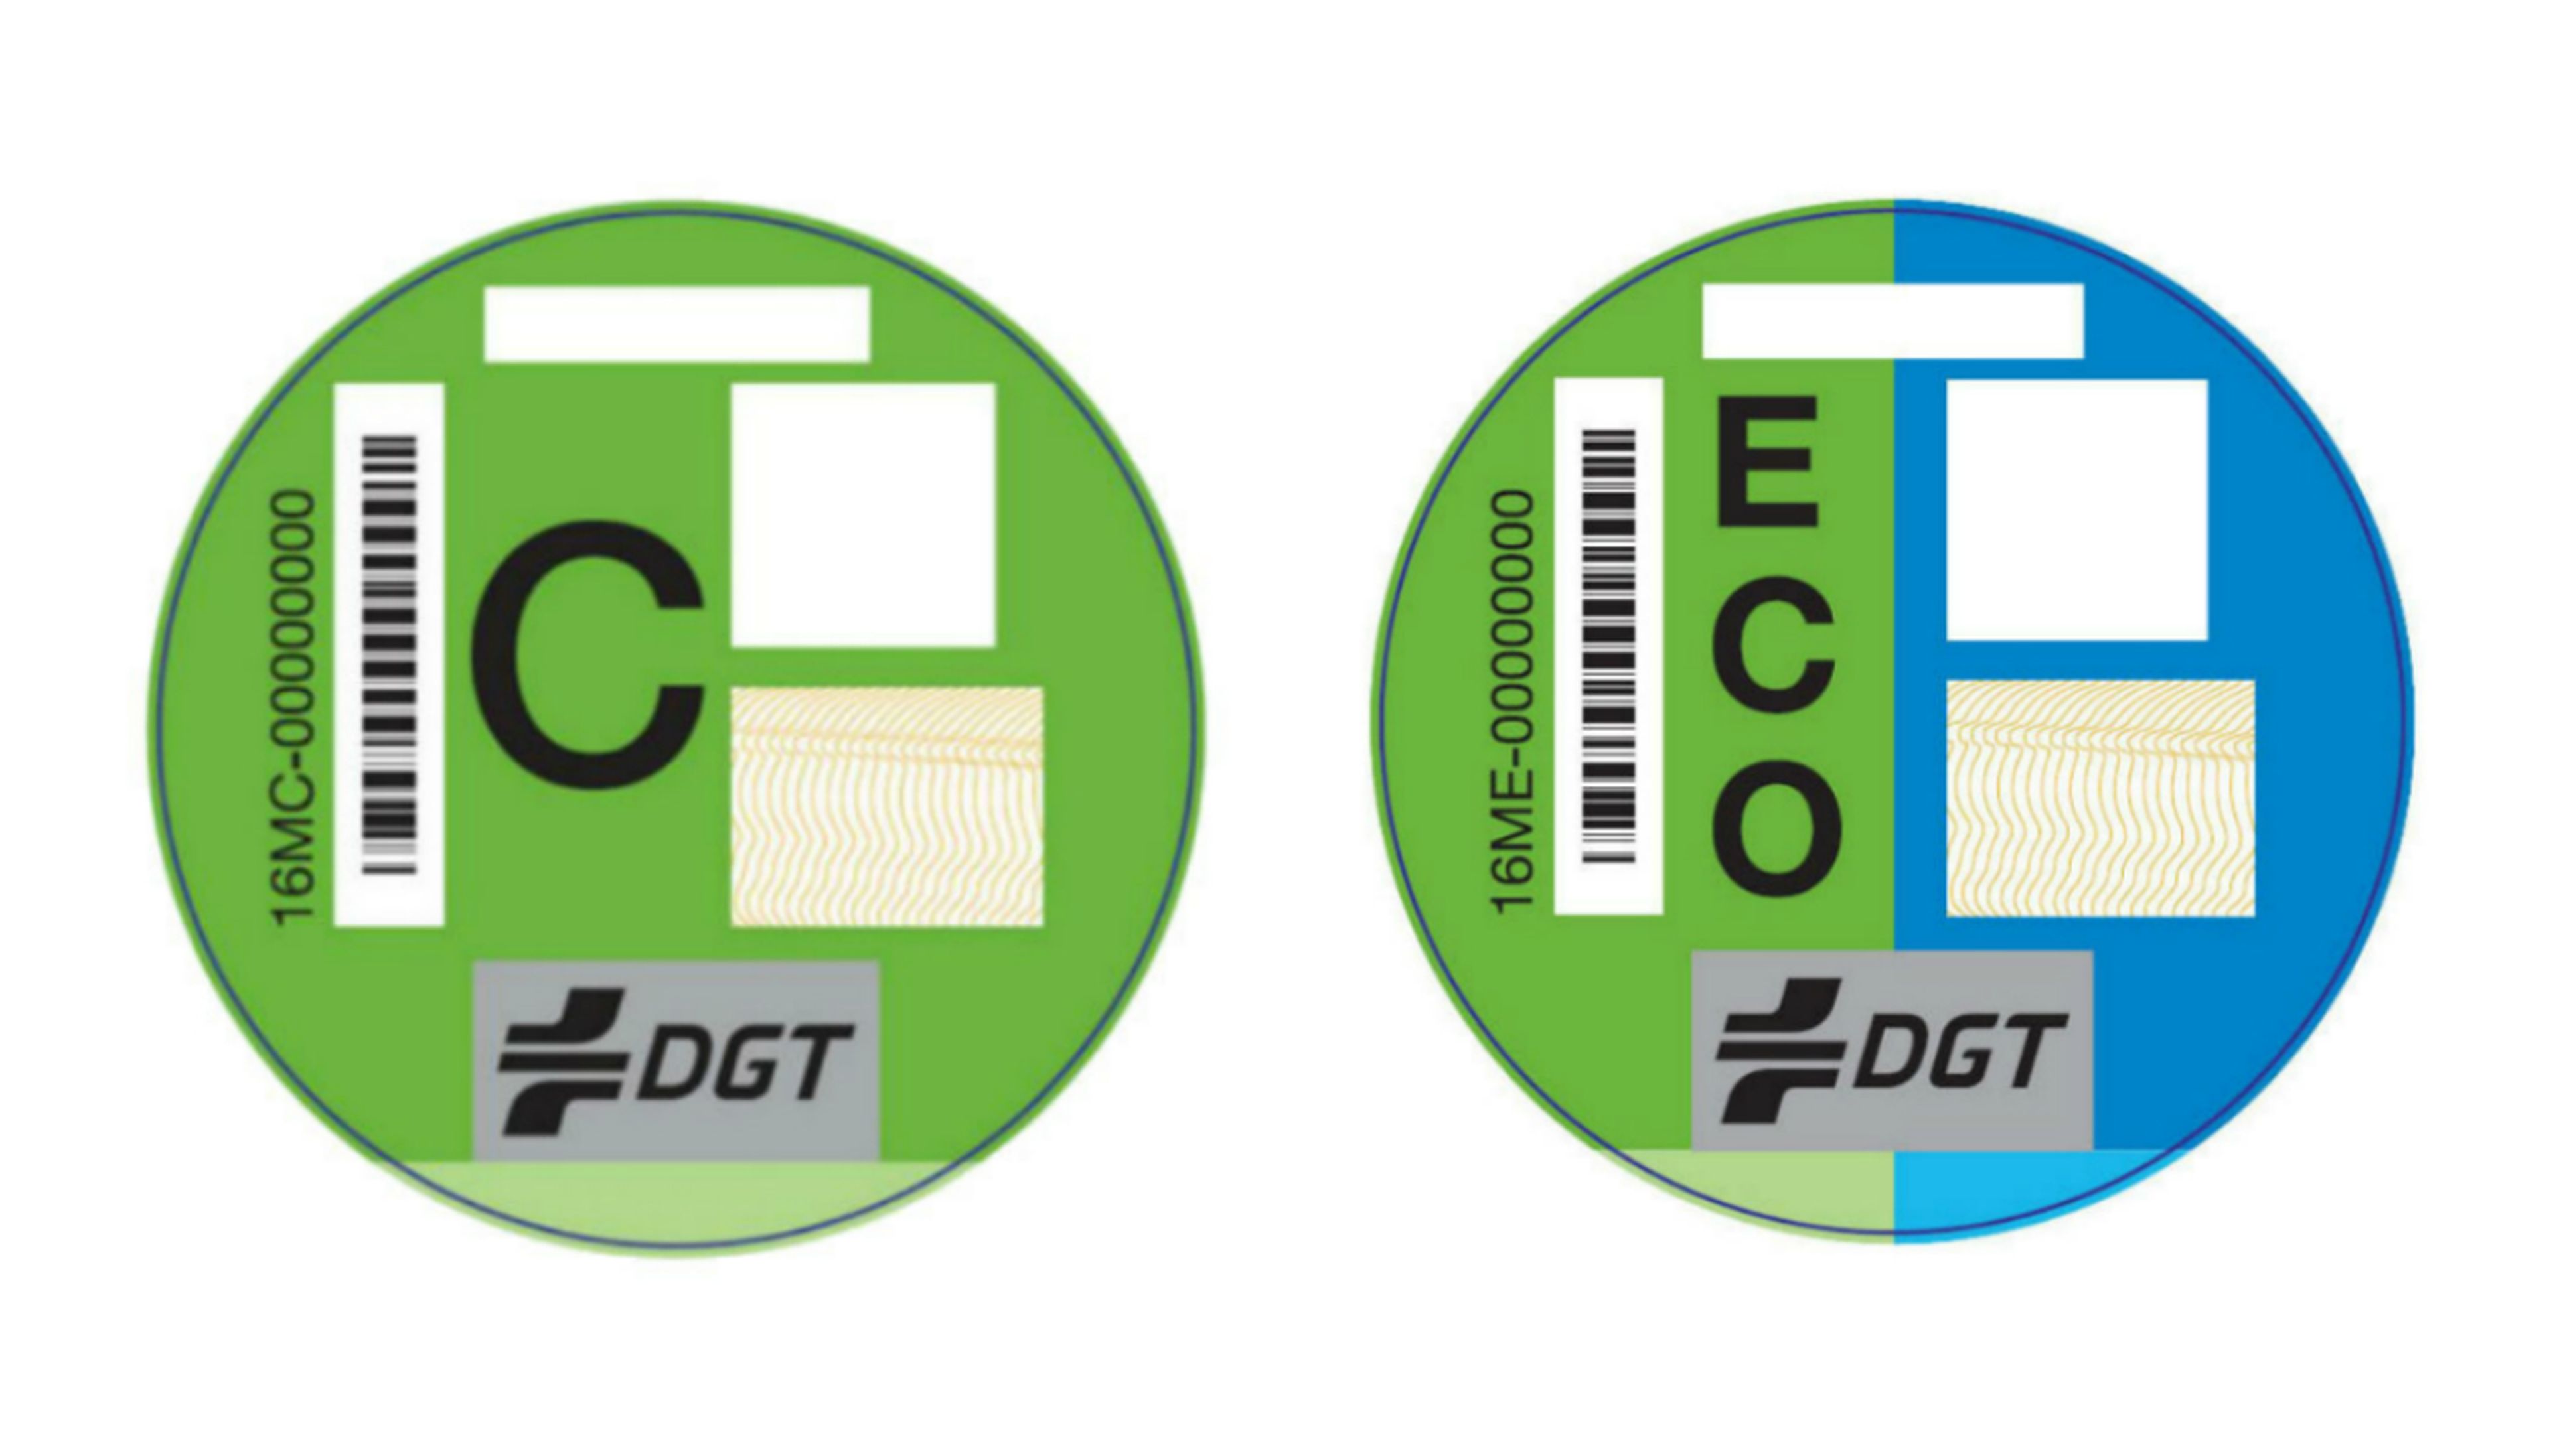 Diferencias entre la etiqueta C y la etiqueta Eco de la DGT